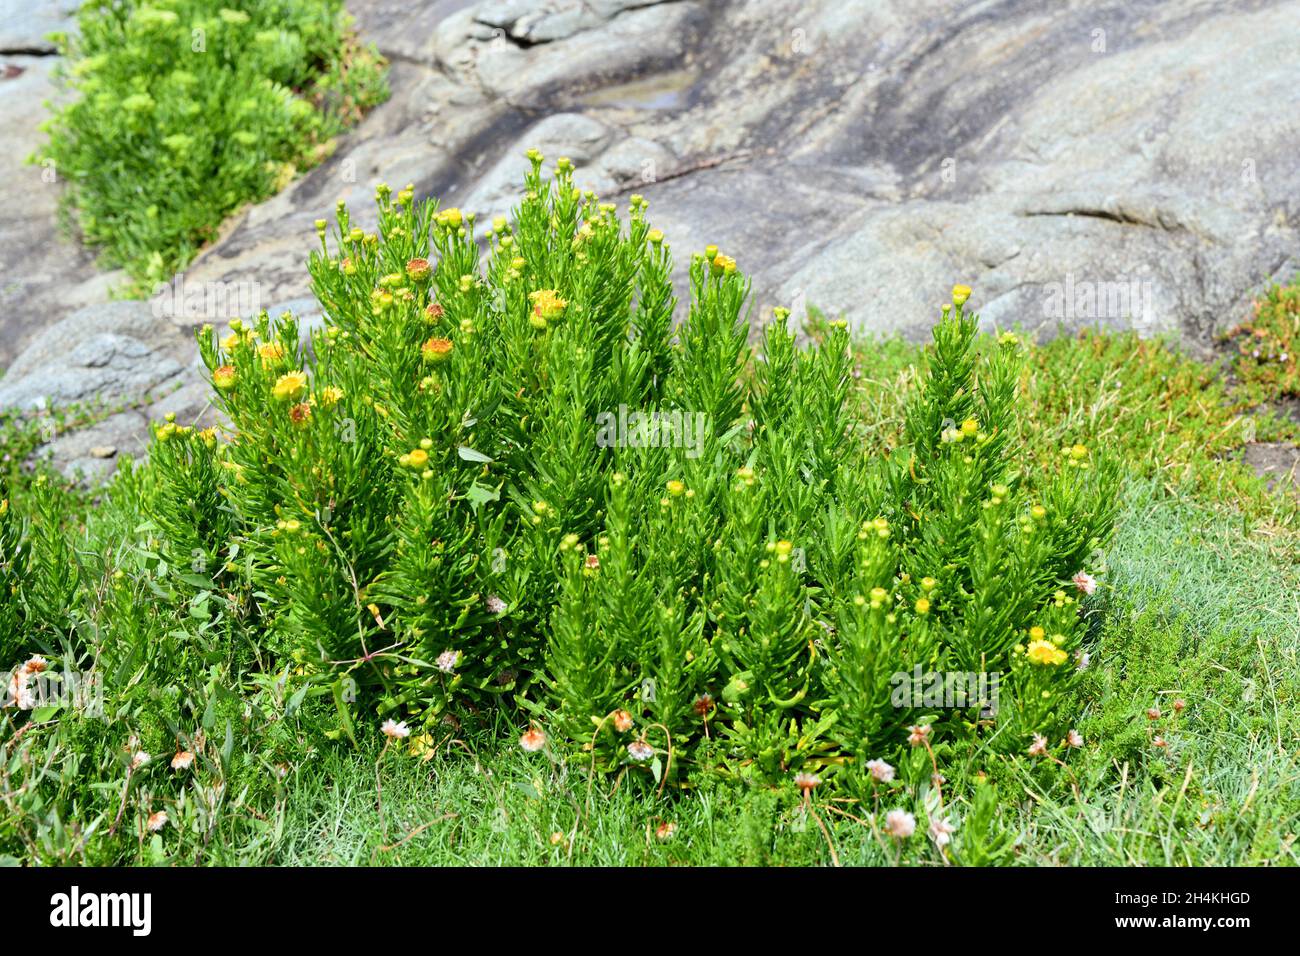 El zafiro dorado (Inula chrithmoides o Limbarda chrithmoides) es un arbusto nativo de las costas de la cuenca mediterránea y de las costas atlánticas de España, Foto de stock